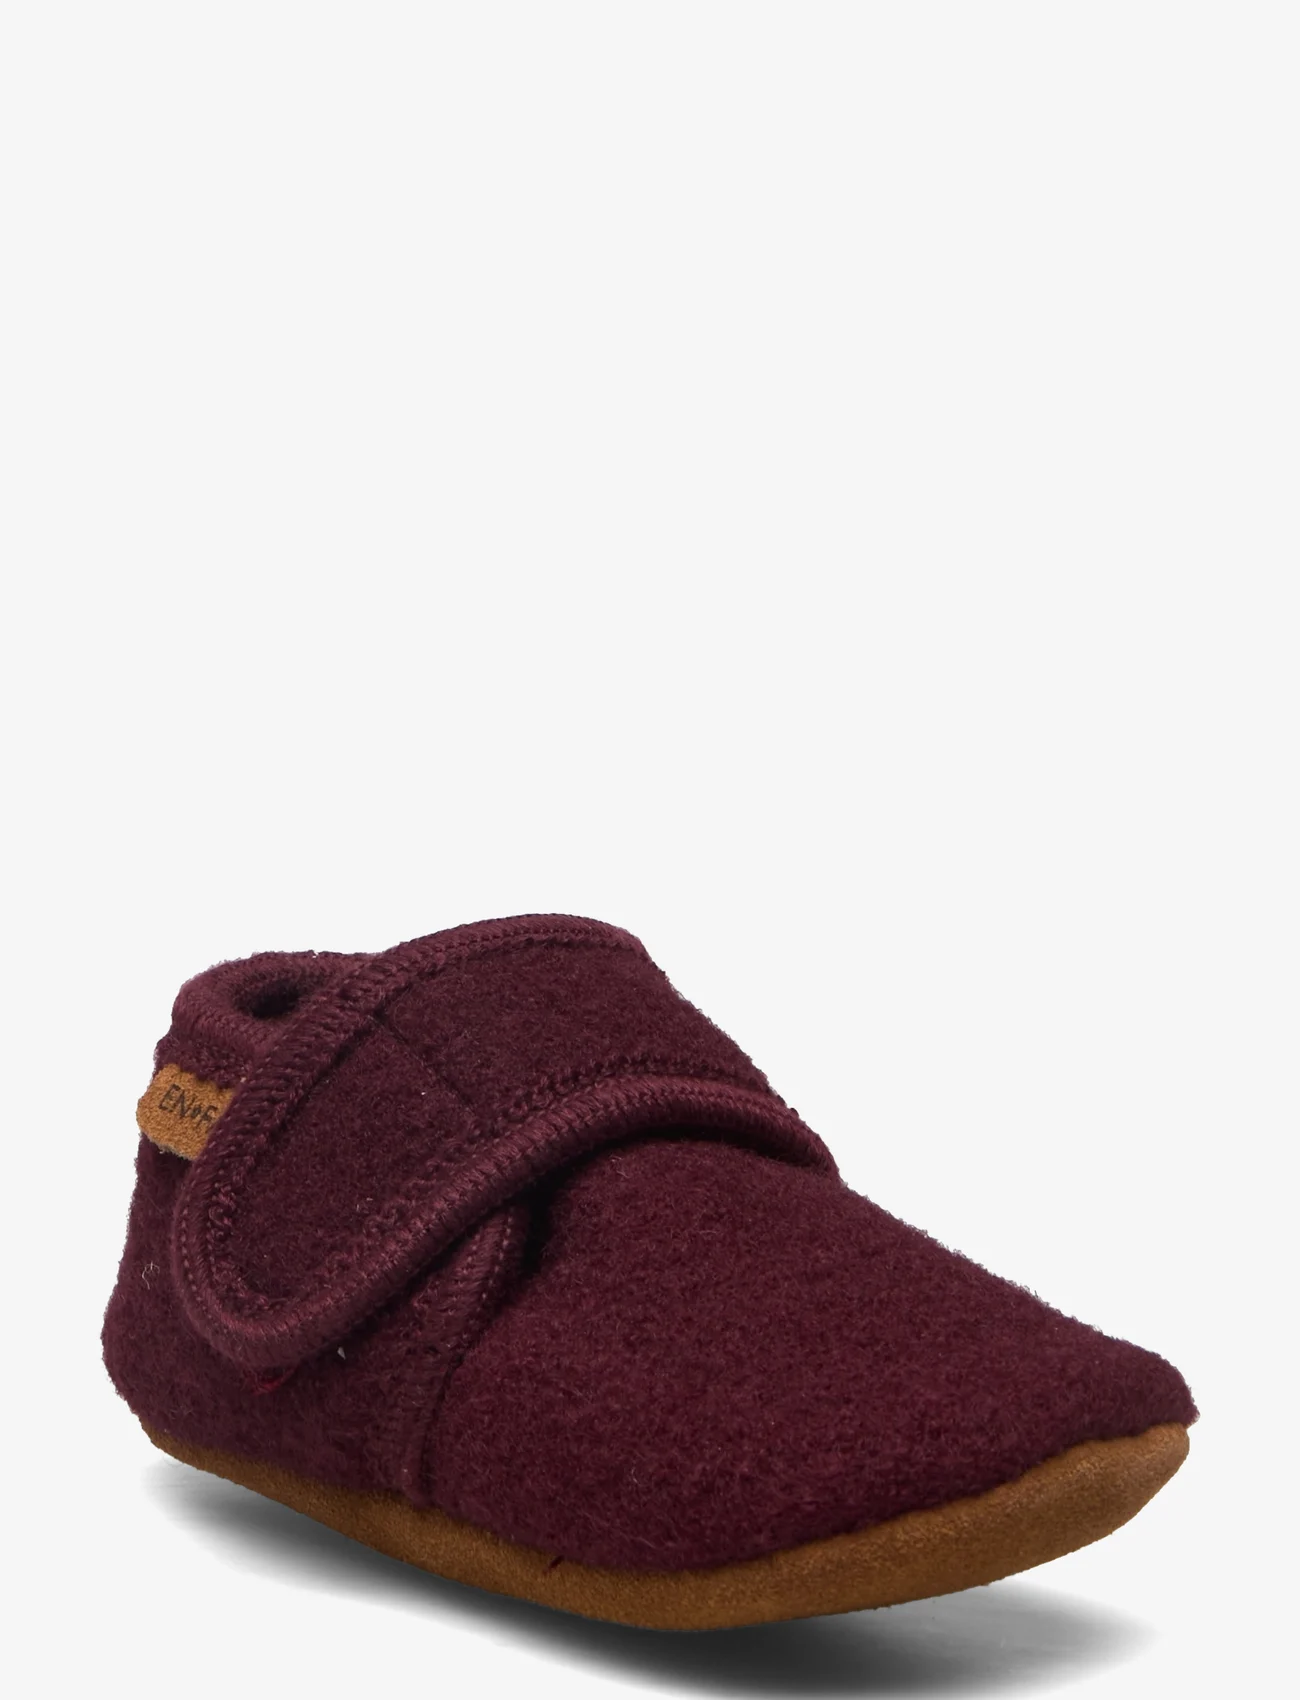 En Fant - Baby Wool slippers - lägsta priserna - winetasting - 0